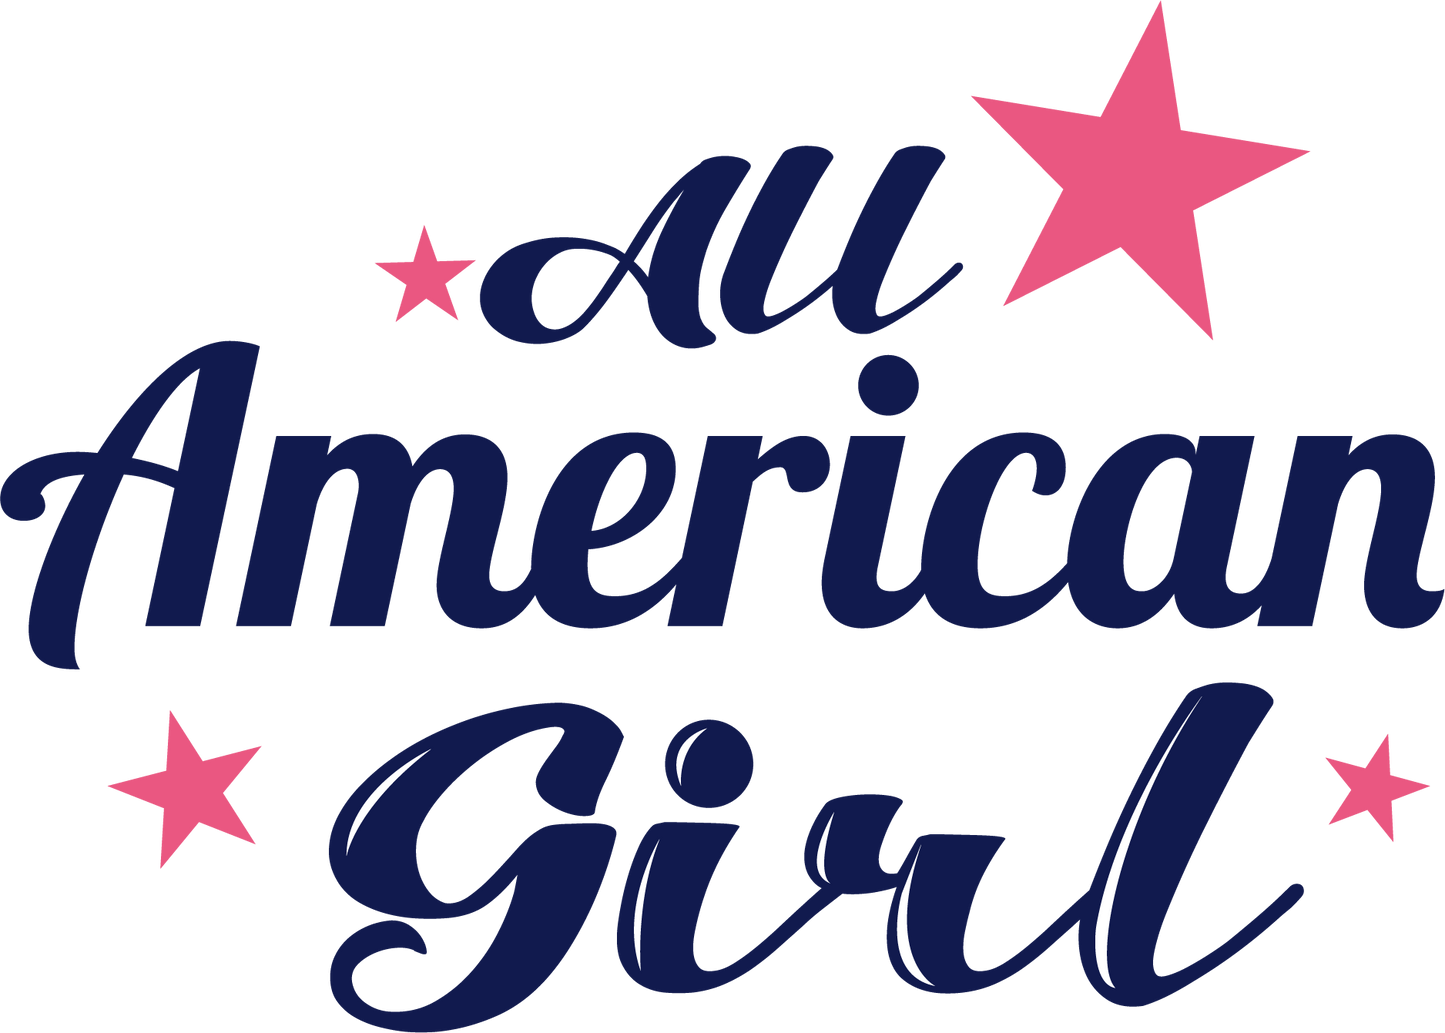 All American Girl Retro Design Transfer